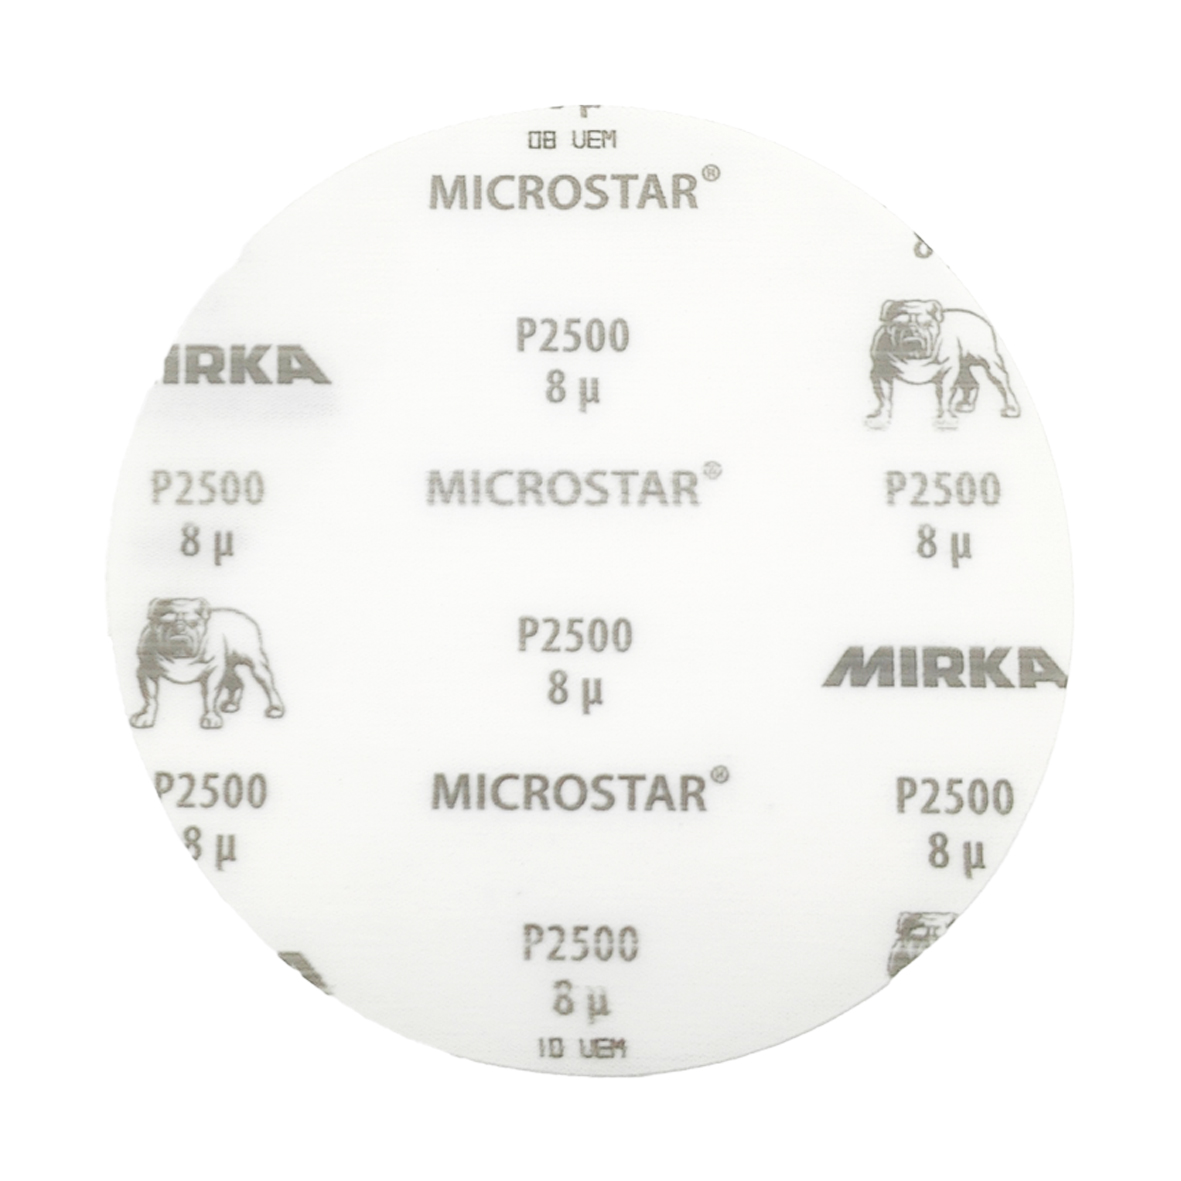 Abbildung Mirka Microstar 150mm Scheibe Vorderseite.